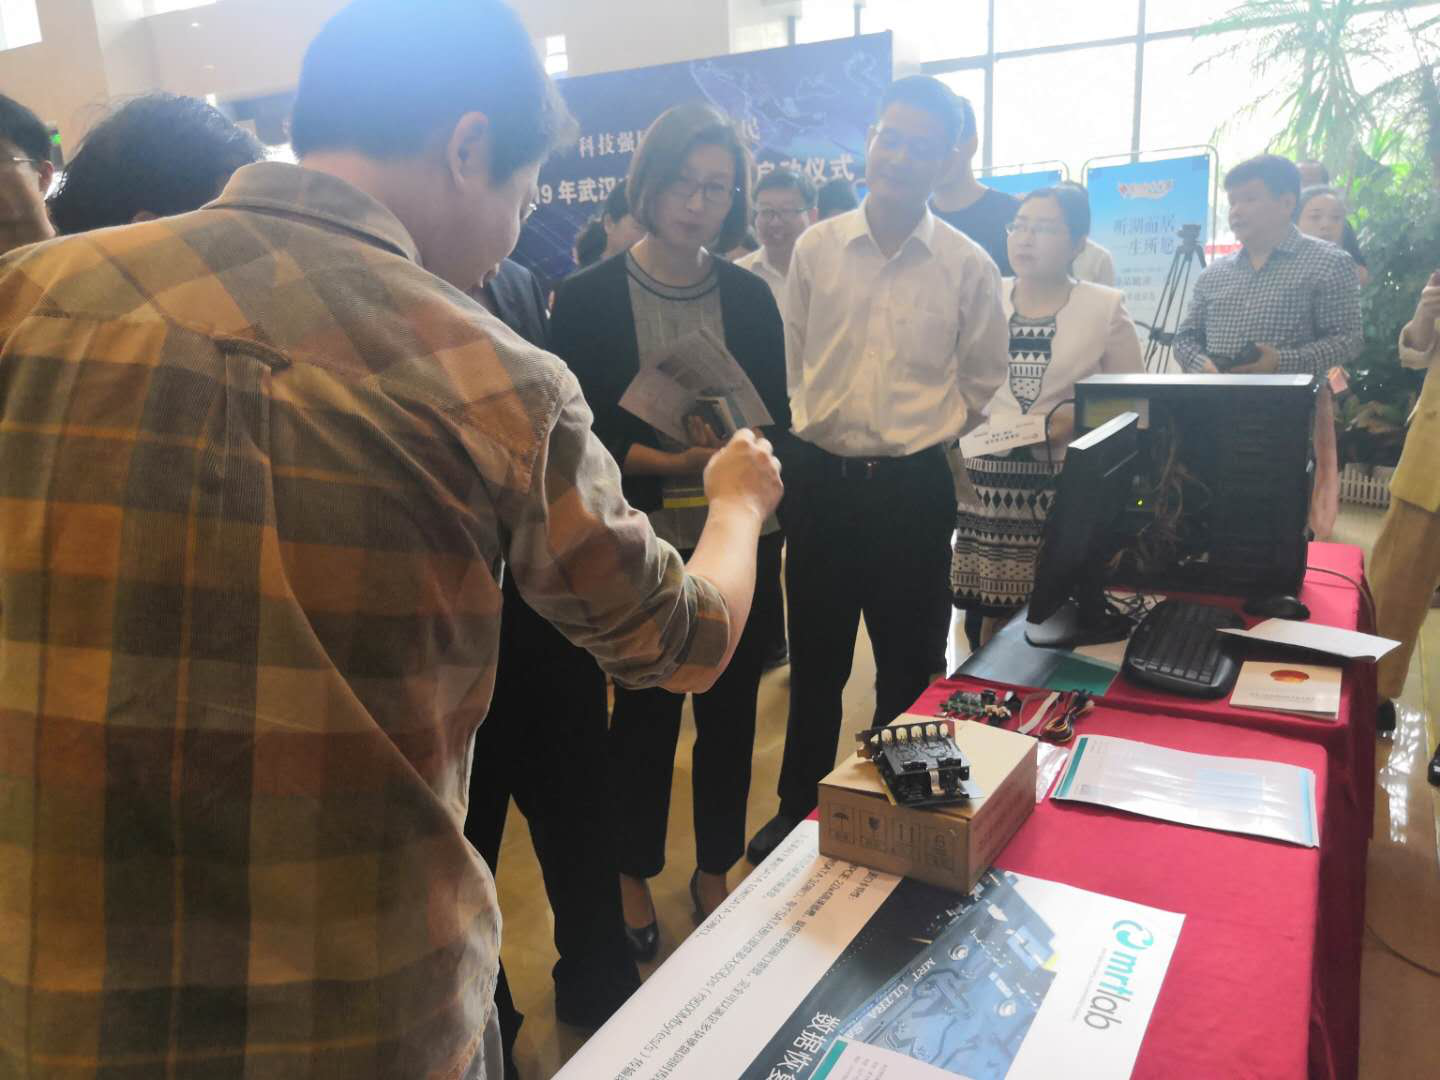 MRT固件实验室参加2019年武汉市科技活动周启动仪式